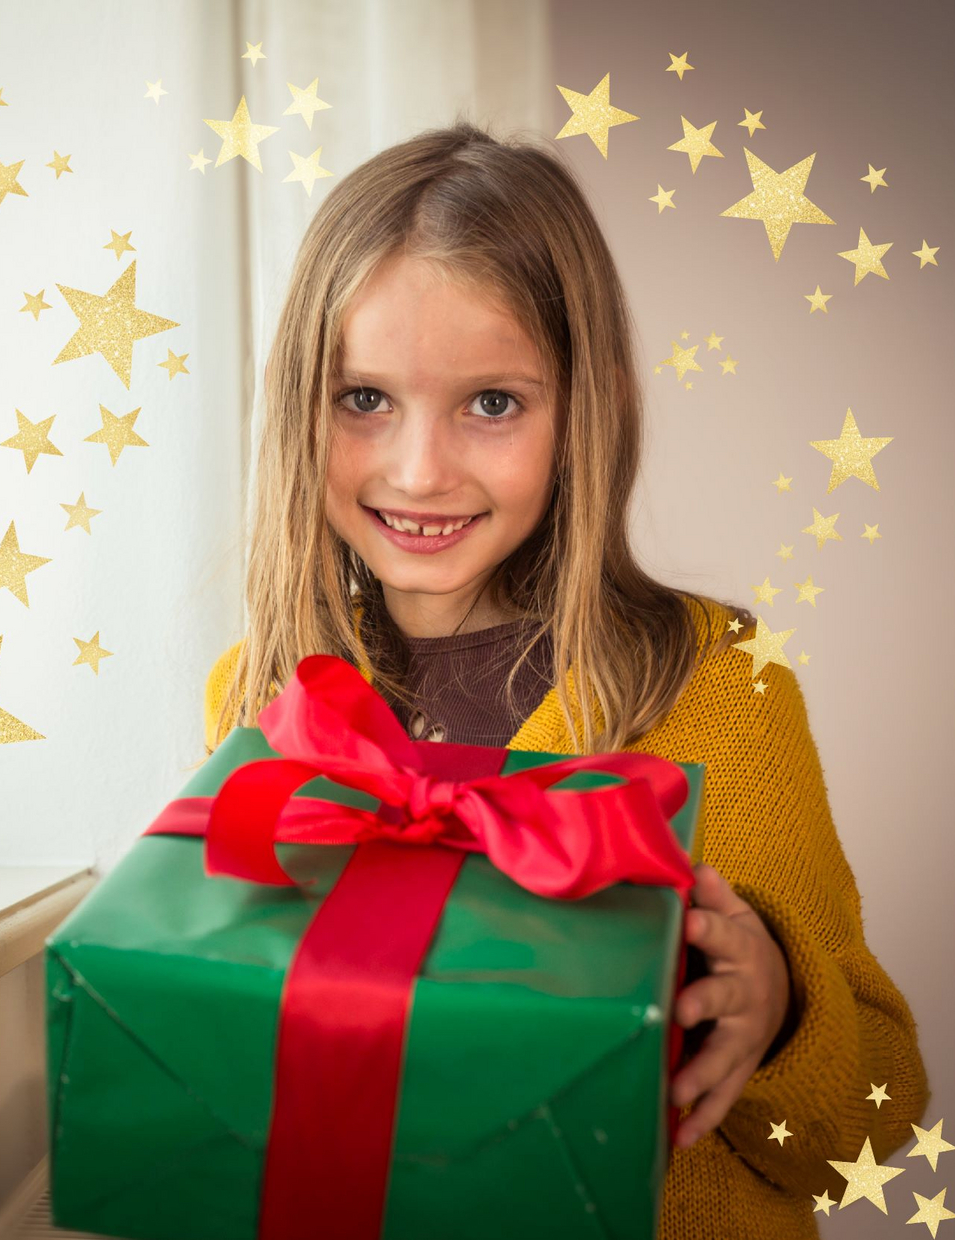 Kind hält Weihnachtsgeschenk in Händen und freut sich